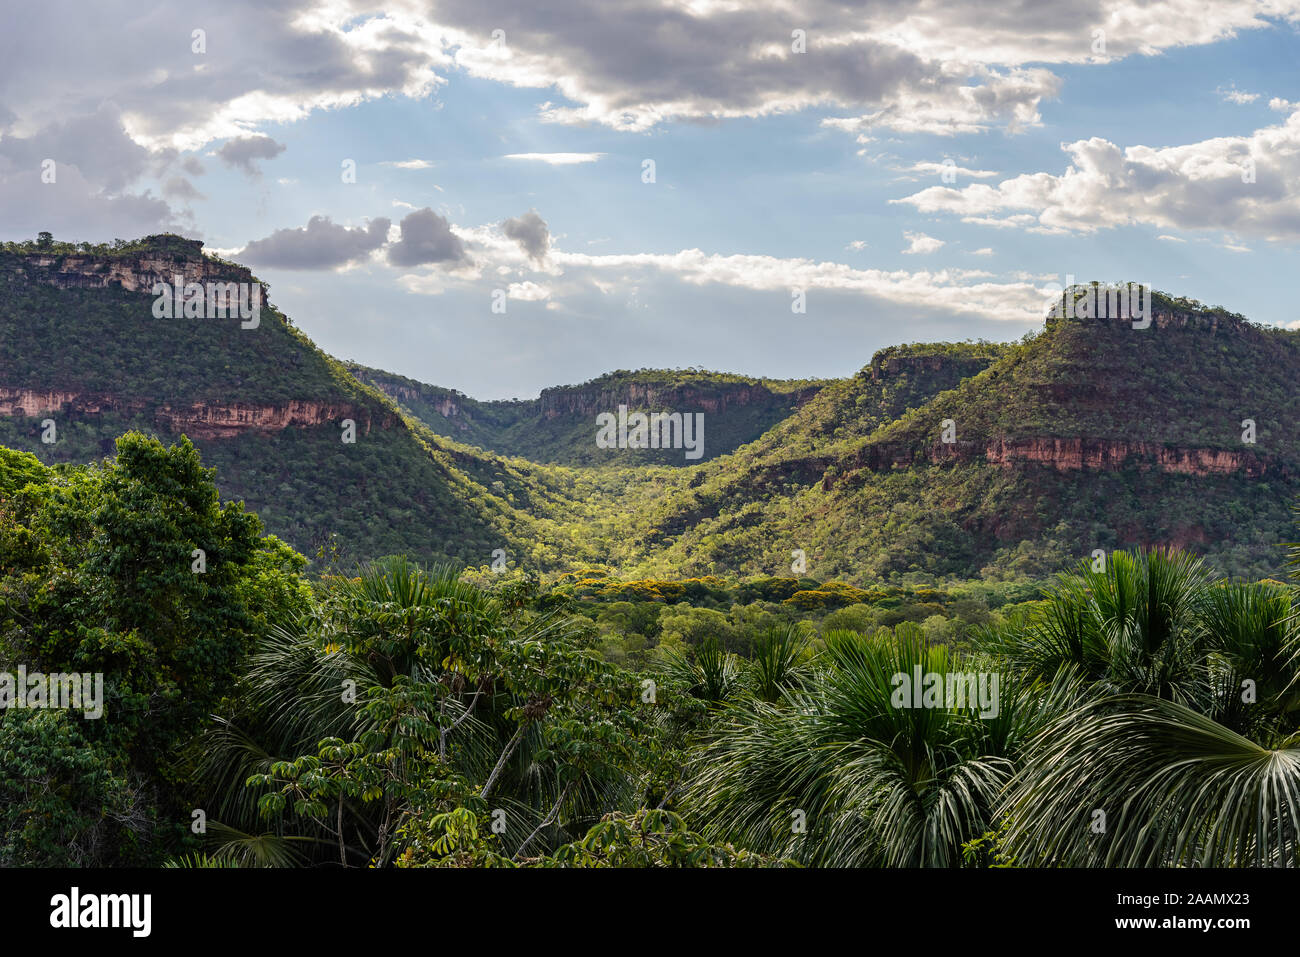 Chapada paysage, plateaux formés avec des couches de grès horizontaux coupés par des vallées. Bahia, Brésil, Amérique du Sud. Banque D'Images